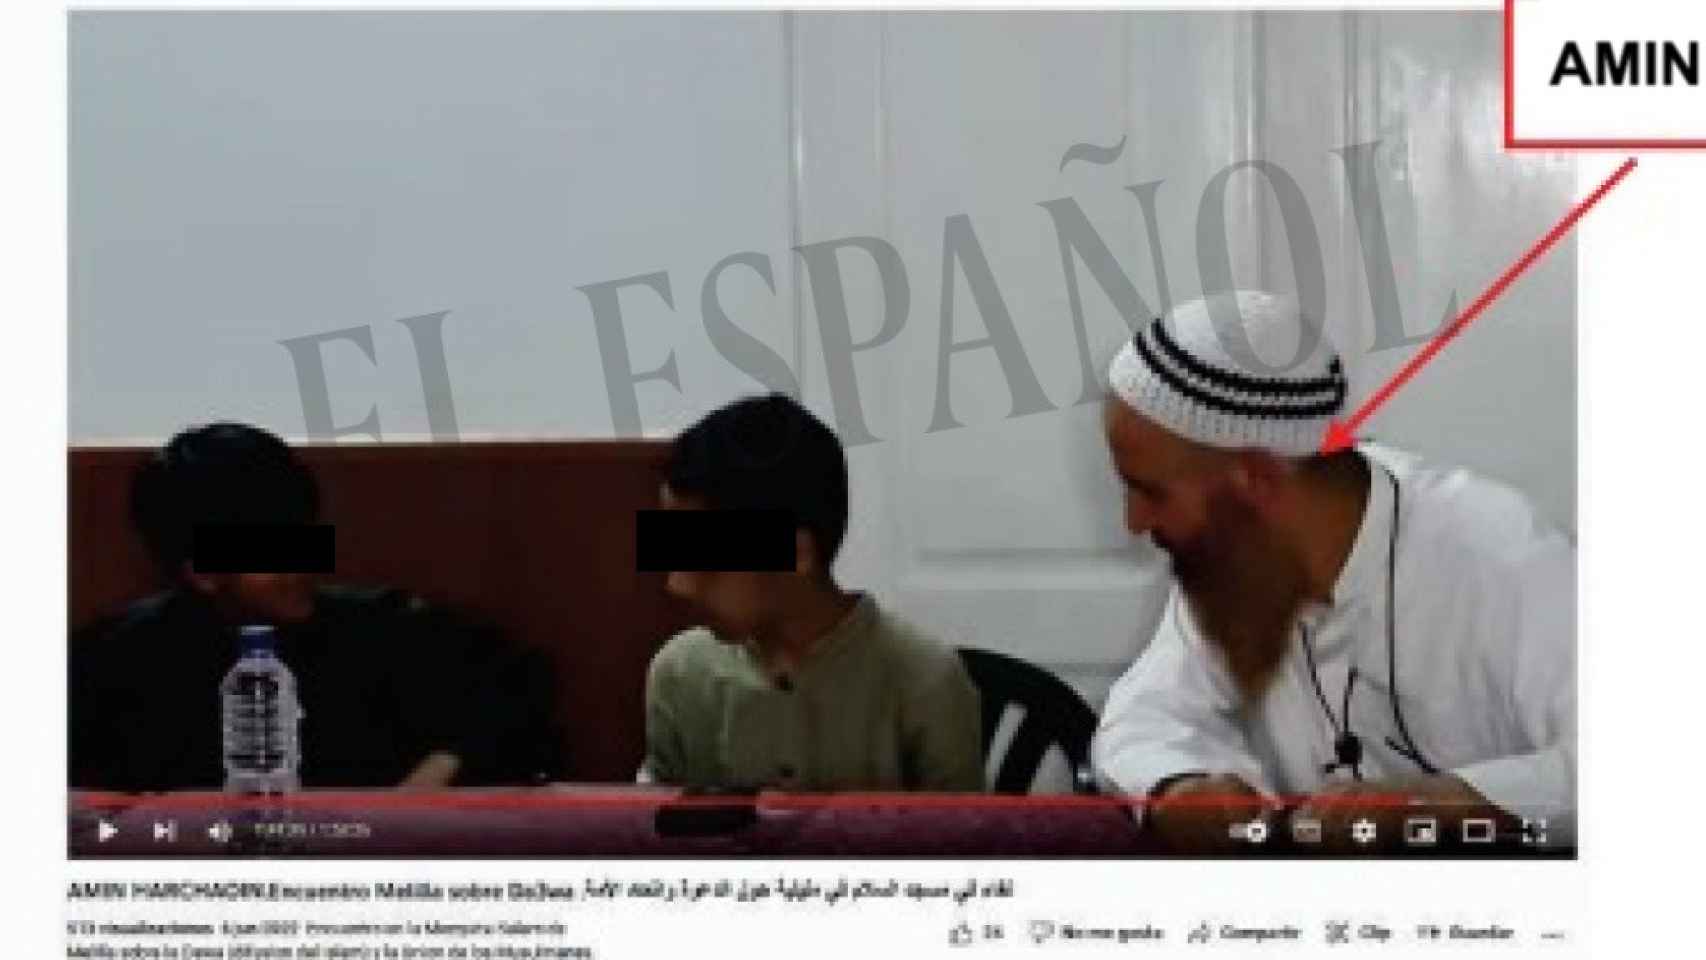 El imám de Melilla, junto a unos menores, en una de las imágenes incluidas en el informe policial.